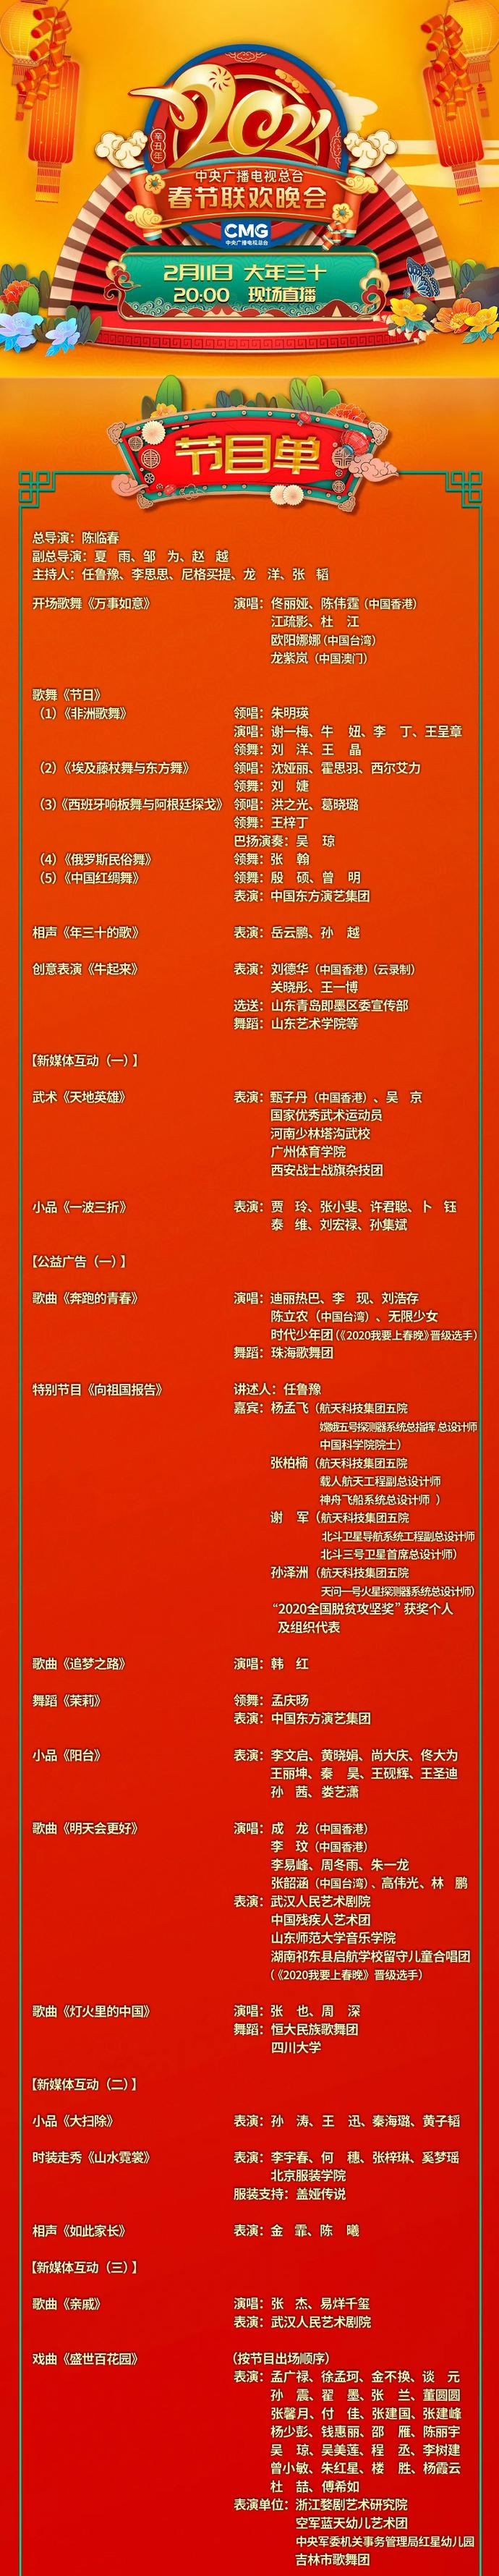 央视2021春晚节目单来了!广东卫视陪您一起迎接辛丑牛年!